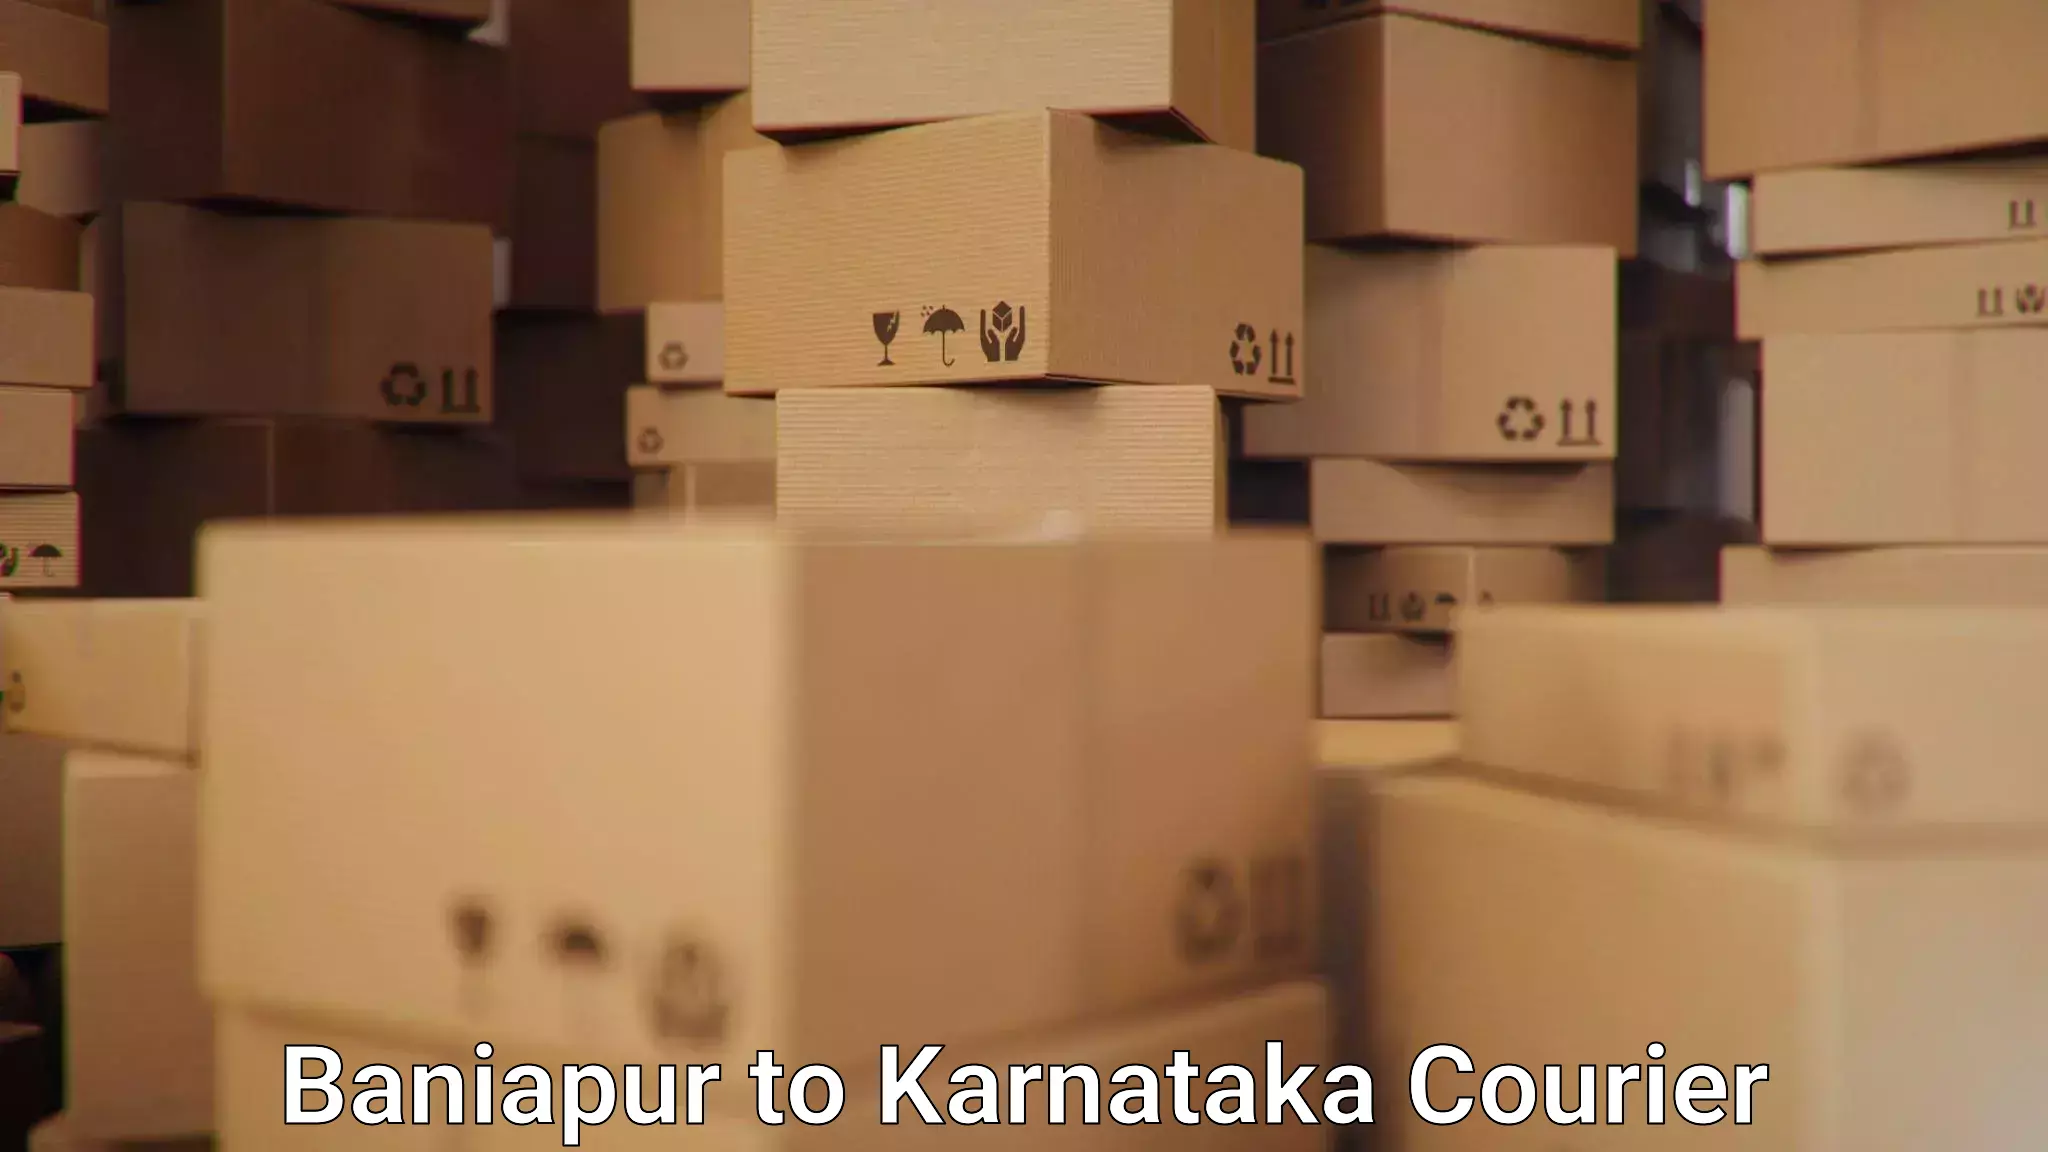 Return courier service Baniapur to Kanjarakatte